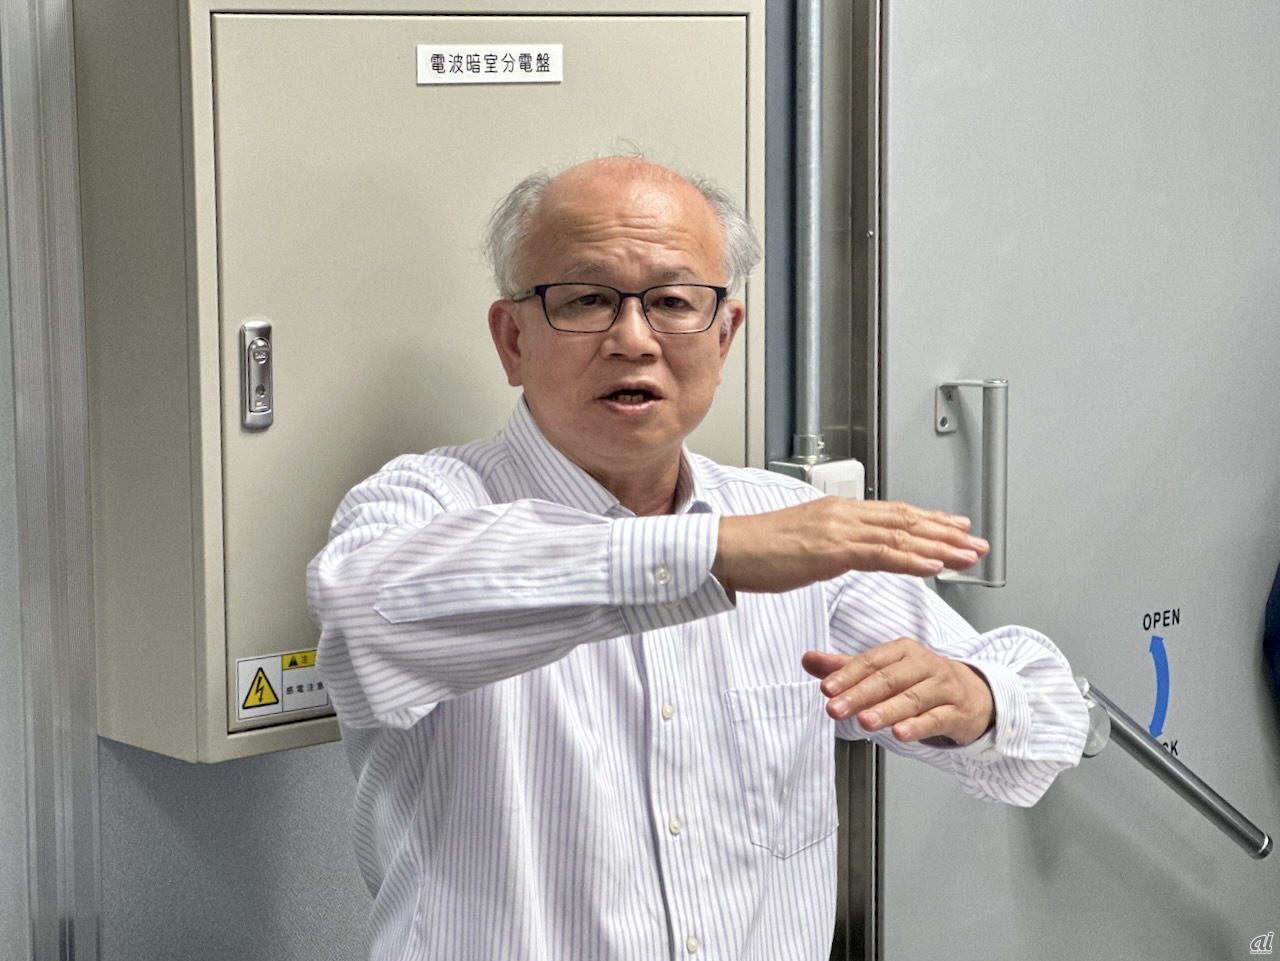 東京工業大学 工学院 電気電子系で特任教授を務める藤井輝也氏